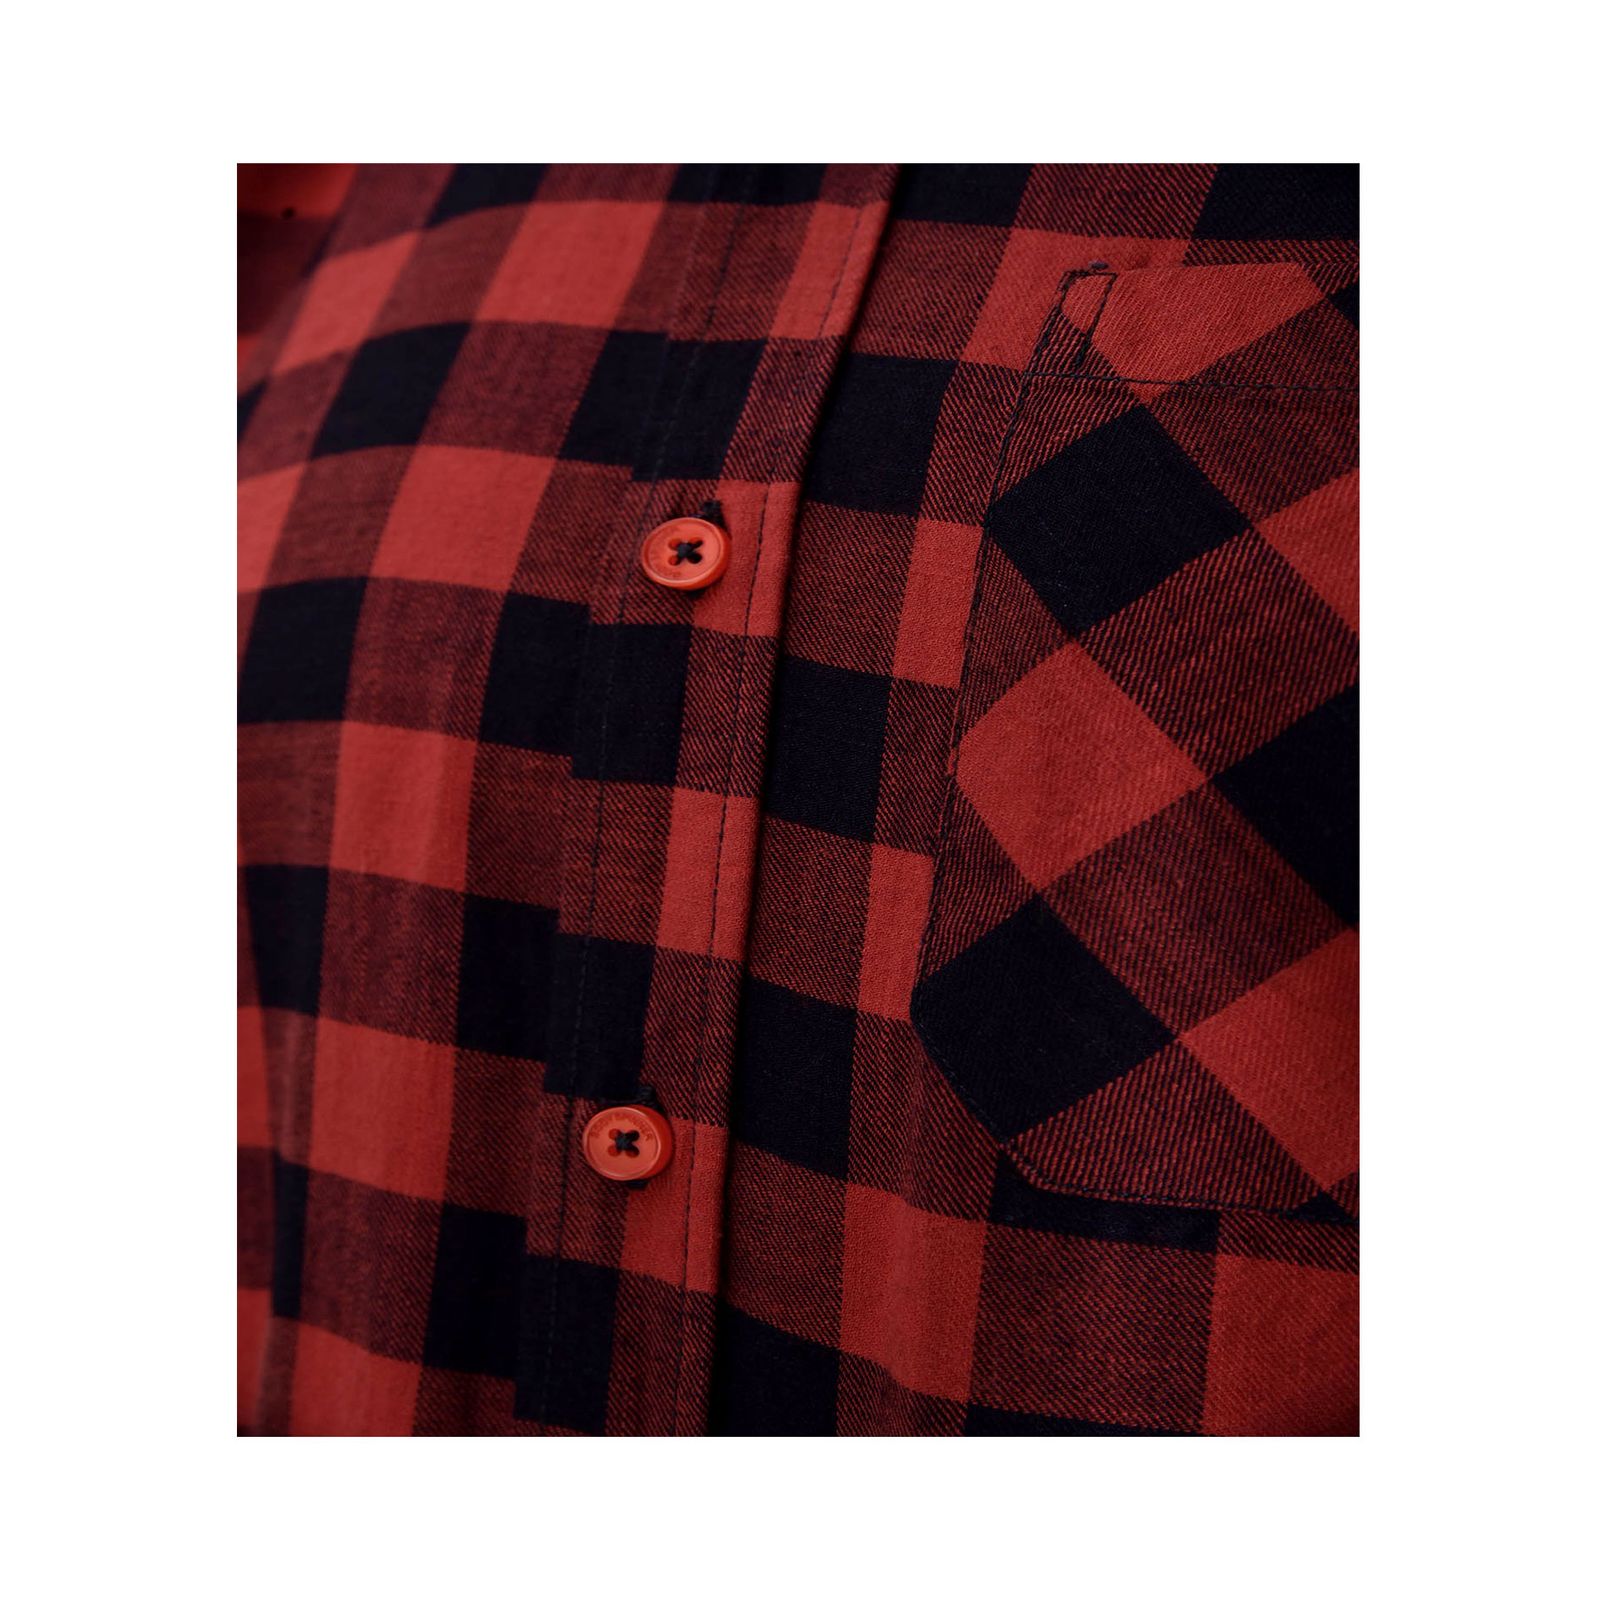 پیراهن آستین بلند مردانه بادی اسپینر مدل 5147 کد 1 رنگ قرمز -  - 4